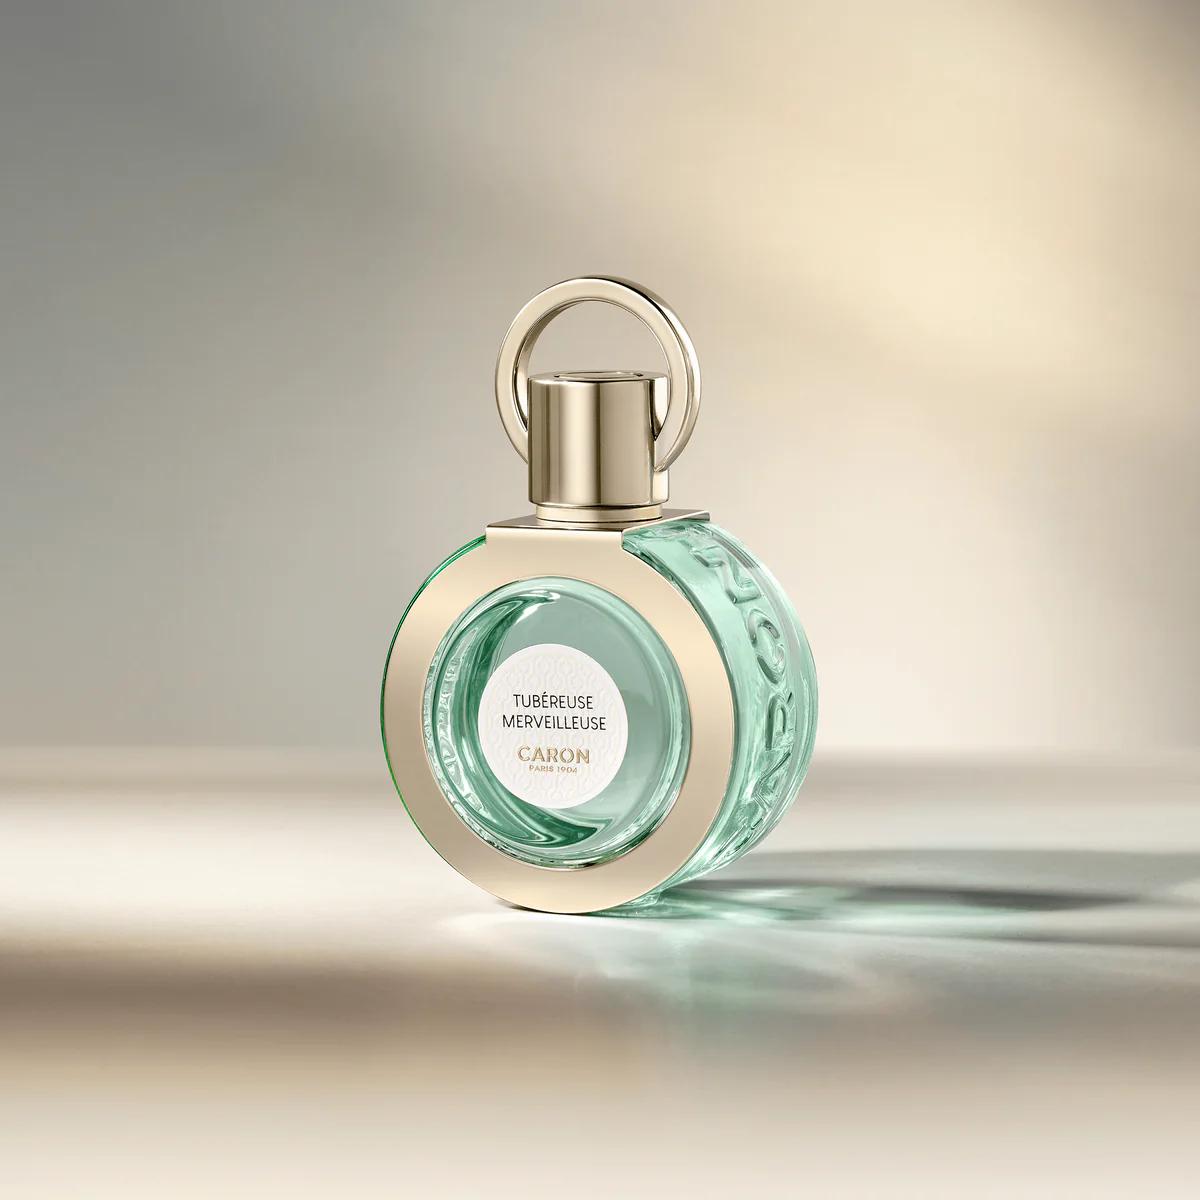 Caron - Tubereuse Merveilleuse 50 ml | Perfume Lounge